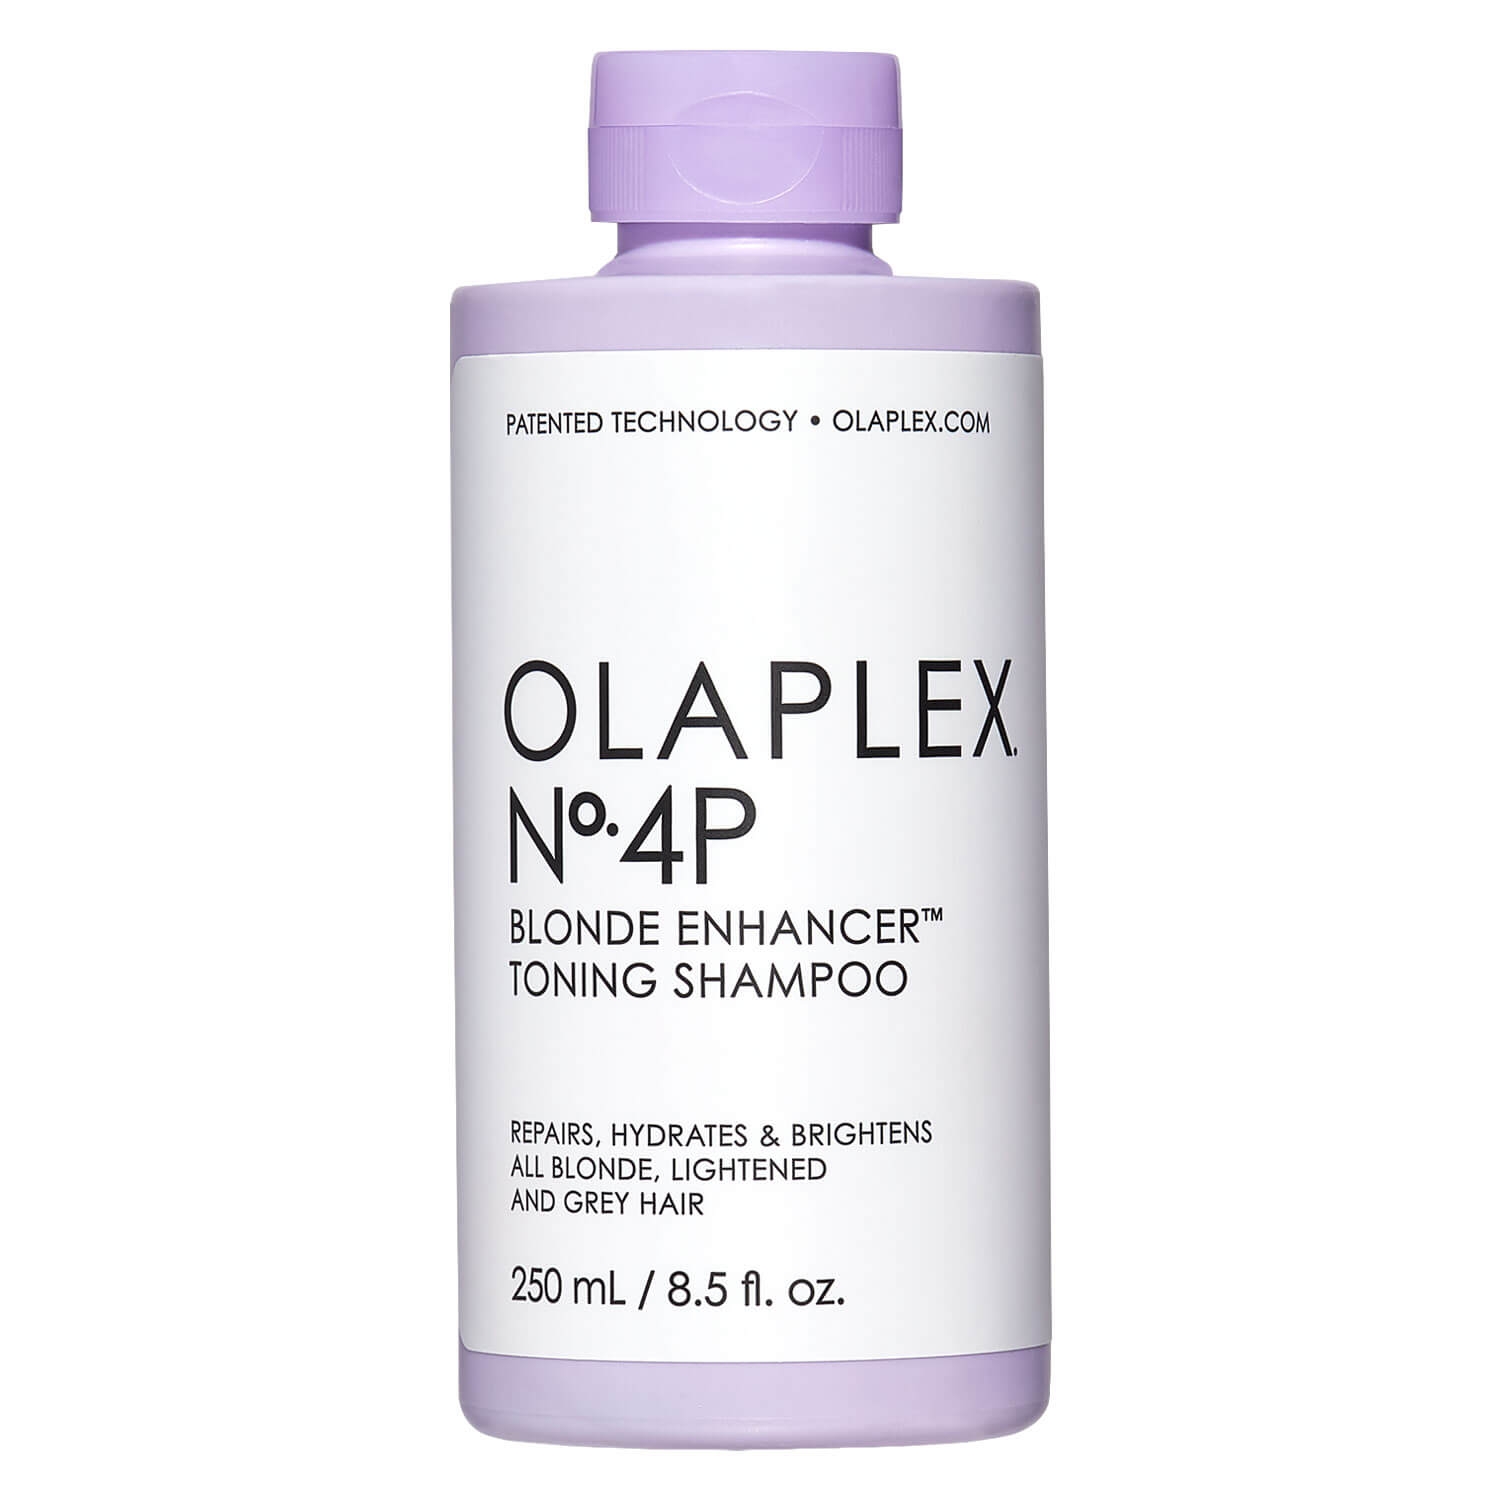 Product image from Olaplex - Blonde Enhancer Toning Shampoo No. 4P